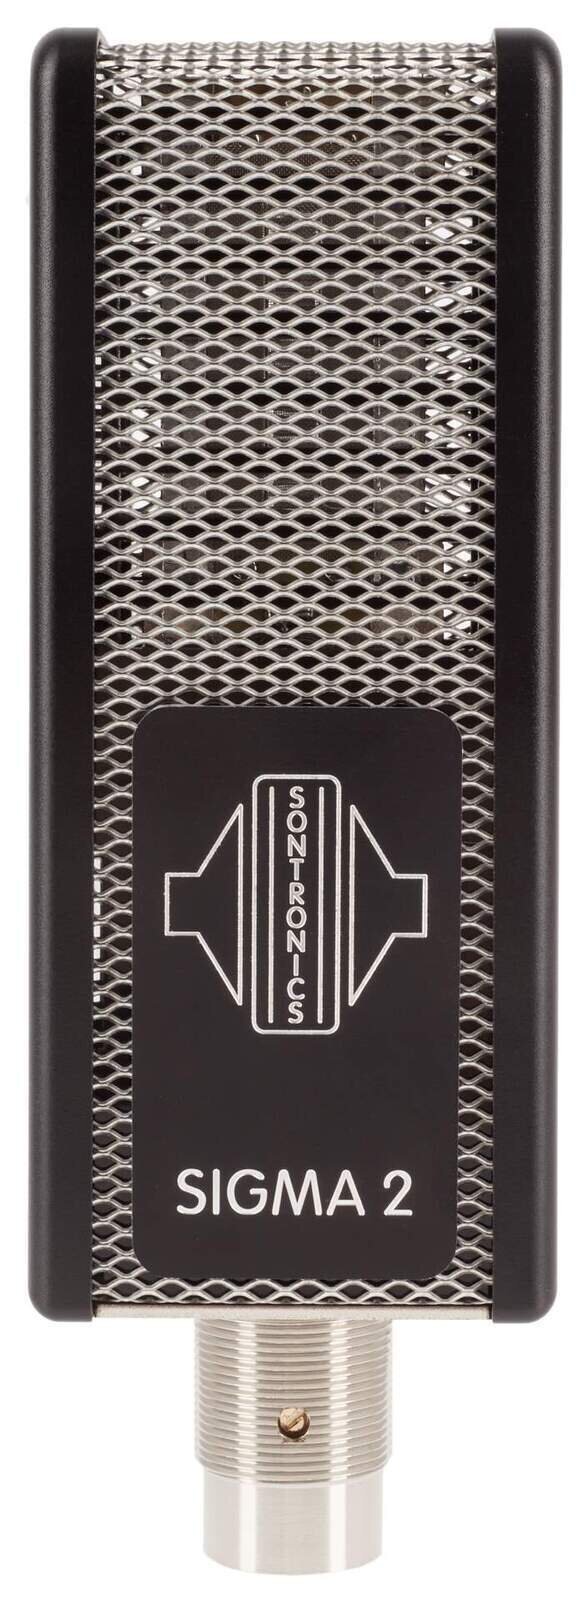 Páskový mikrofón Sontronics Sigma 2 Páskový mikrofón